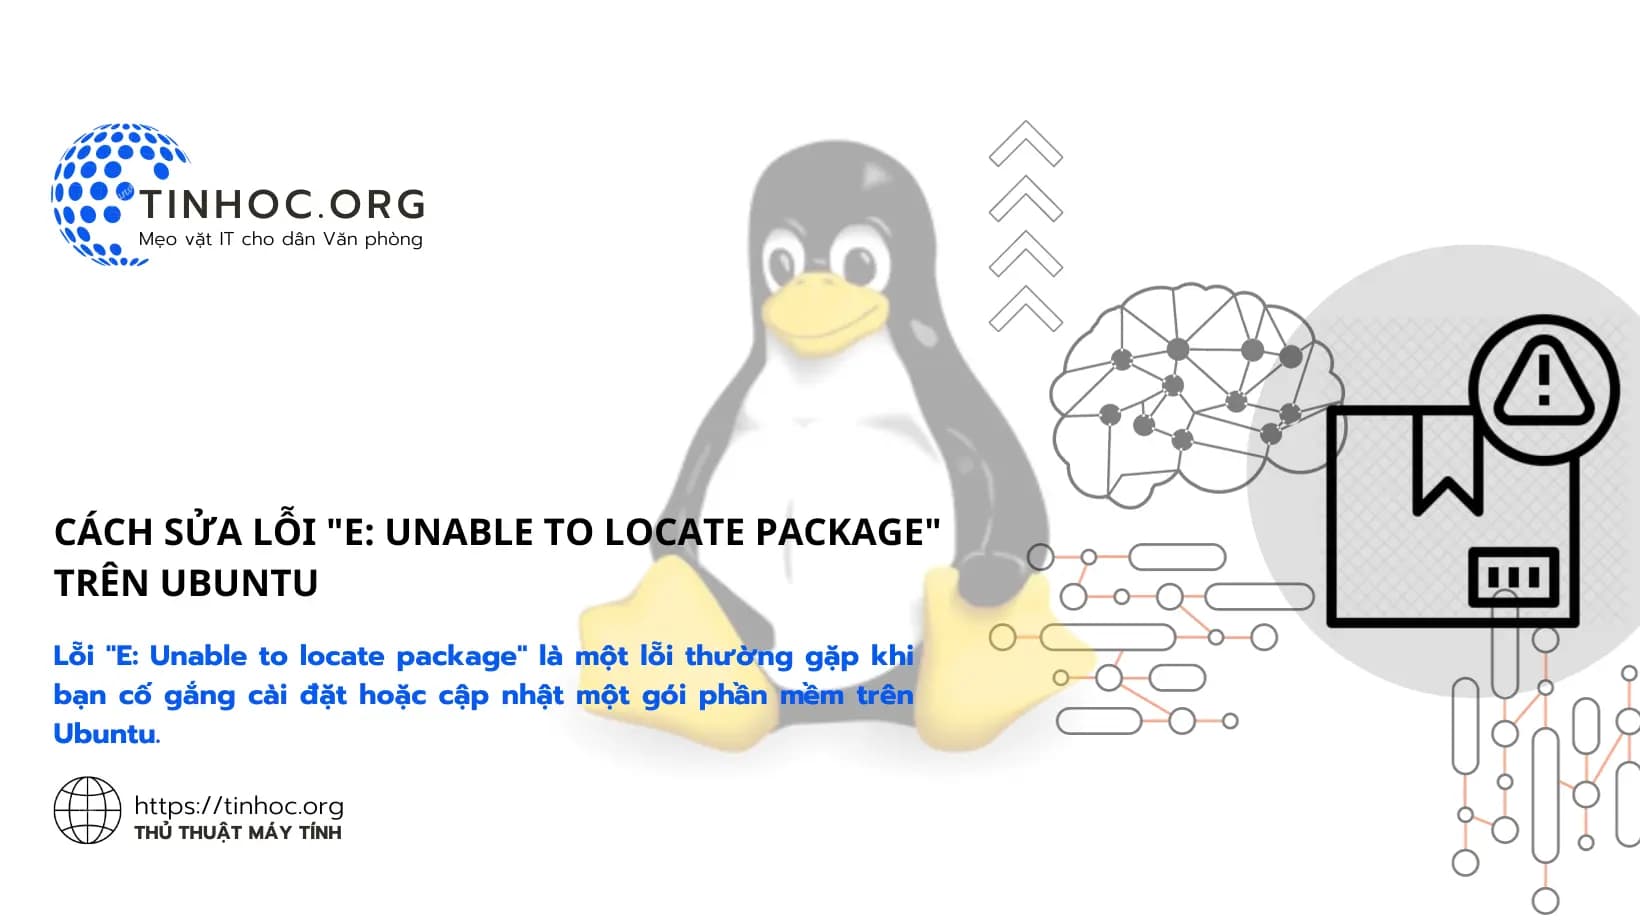 Lỗi "E: Unable to locate package" là một lỗi thường gặp khi bạn cố gắng cài đặt hoặc cập nhật một gói phần mềm trên Ubuntu.